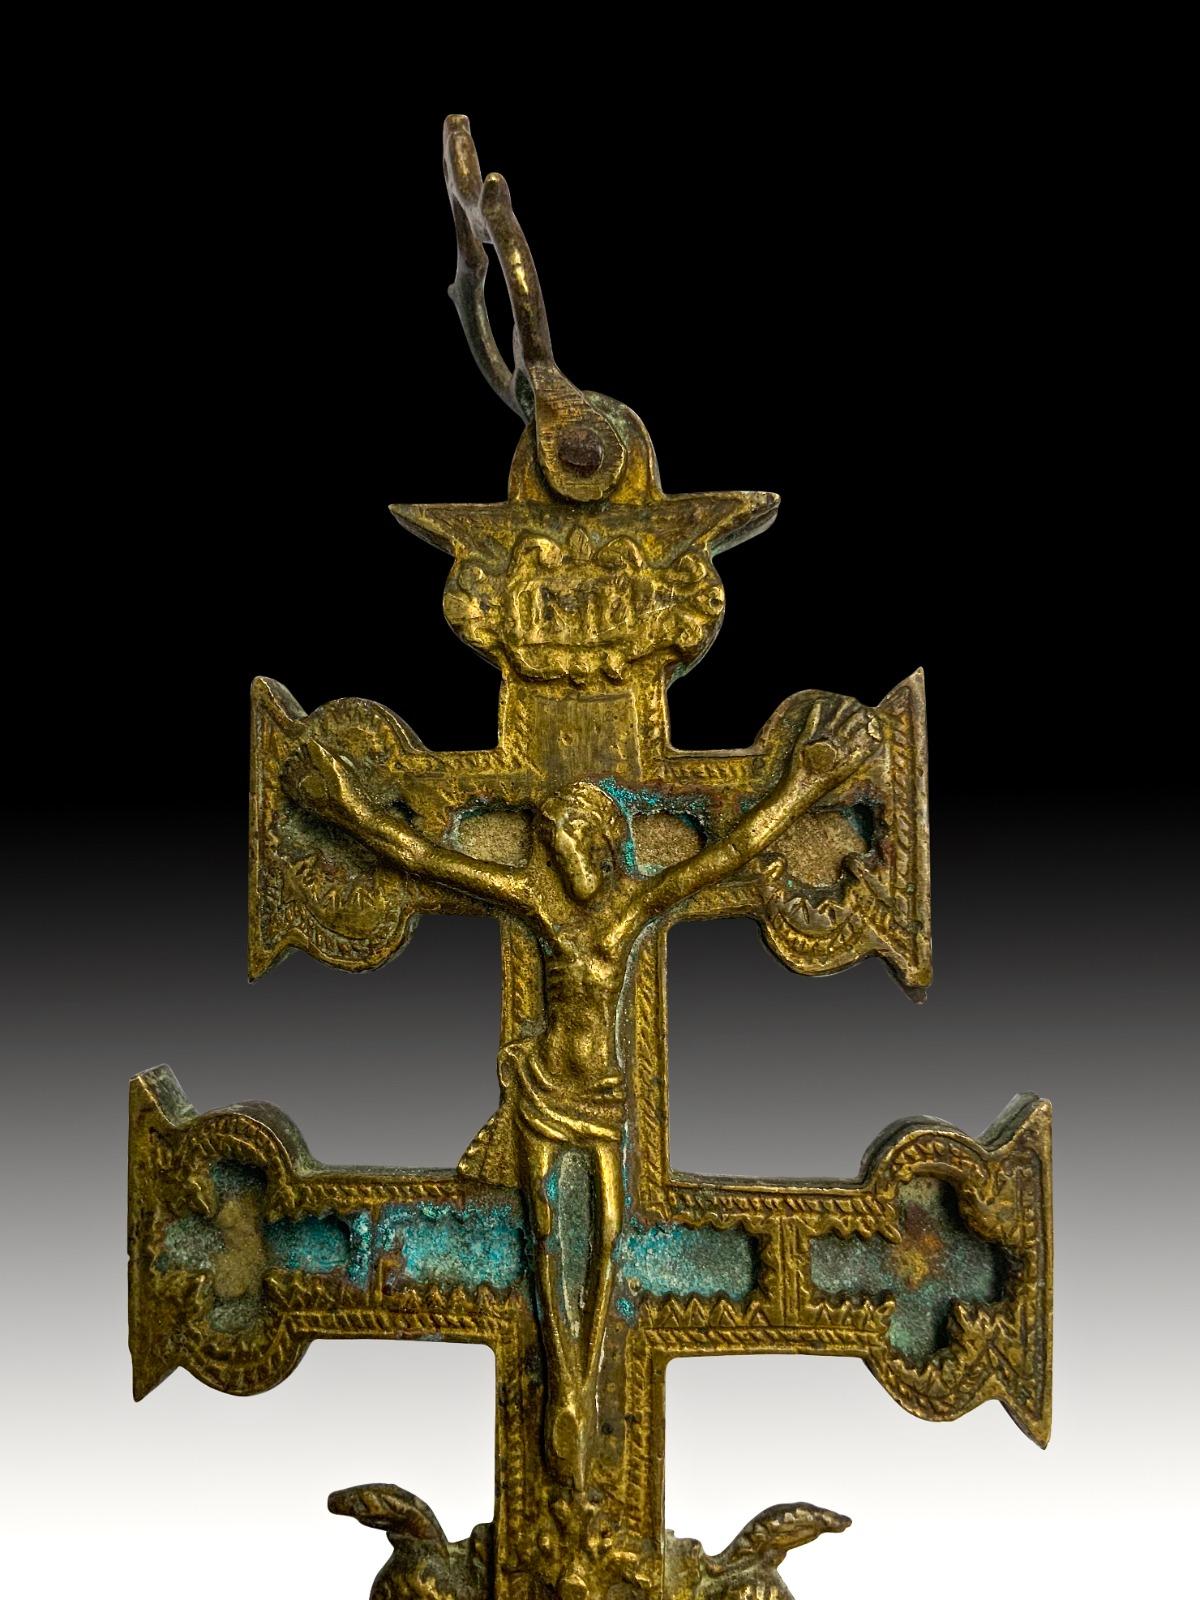 cruz de caravaca meaning